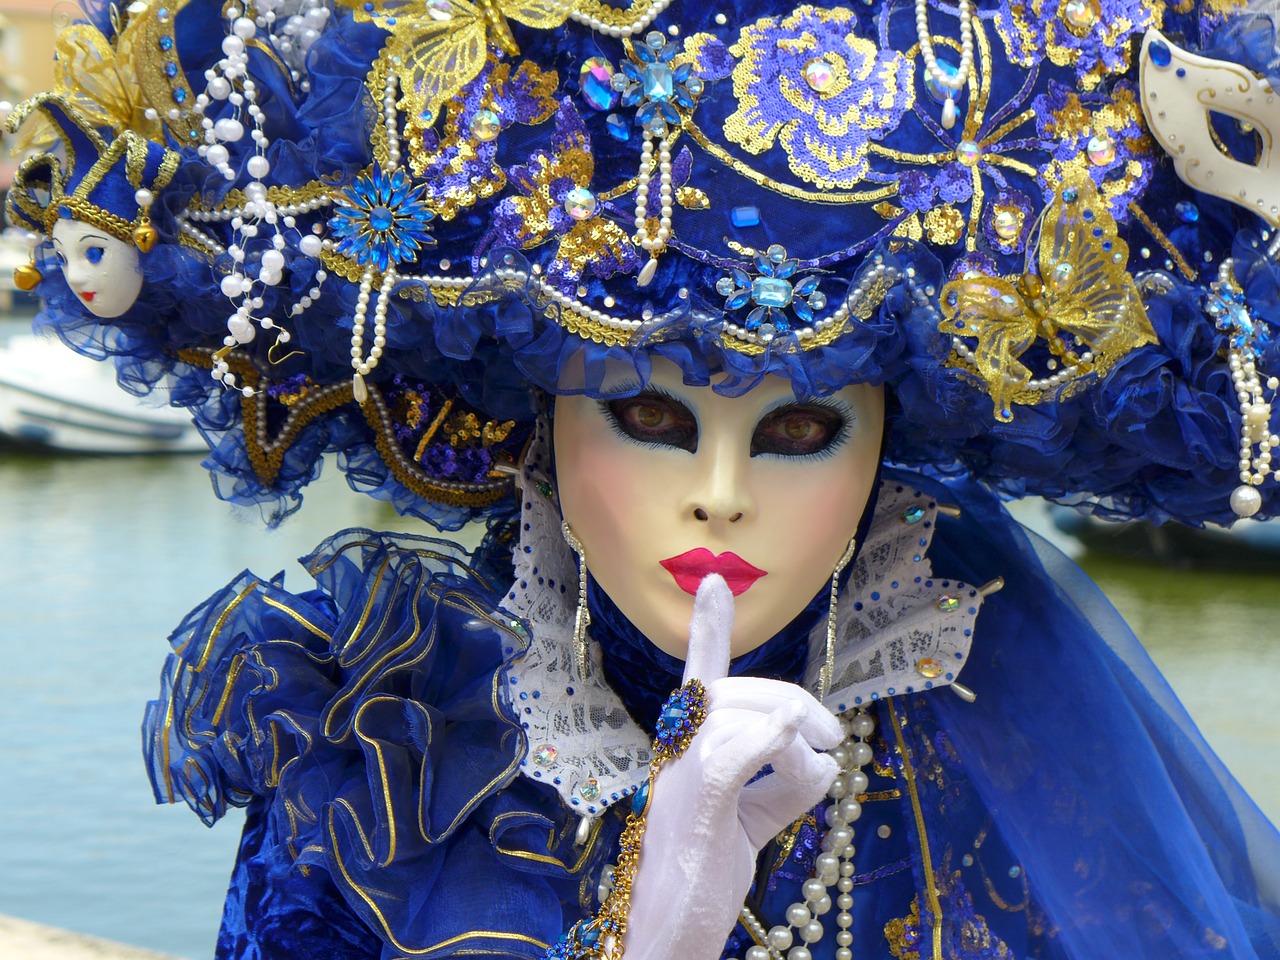 velencei-karneval-utazas.jpg